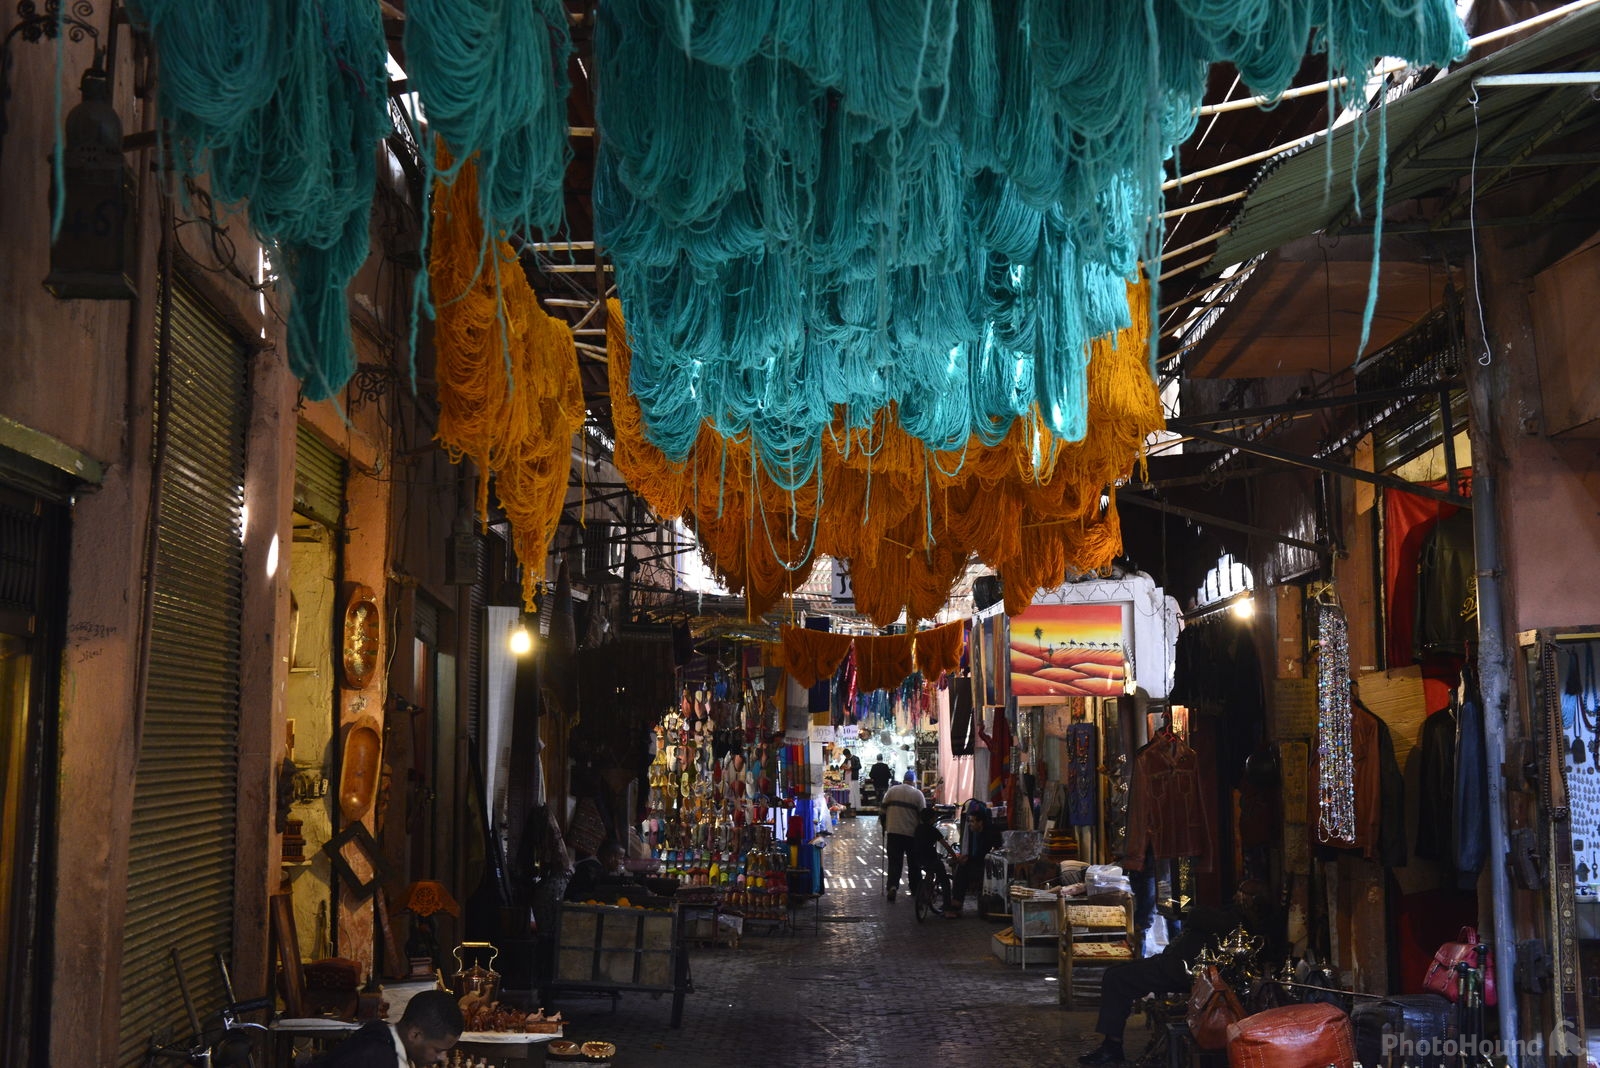 Image of Souks of Marrakech by Wayne & Lyn Liebelt